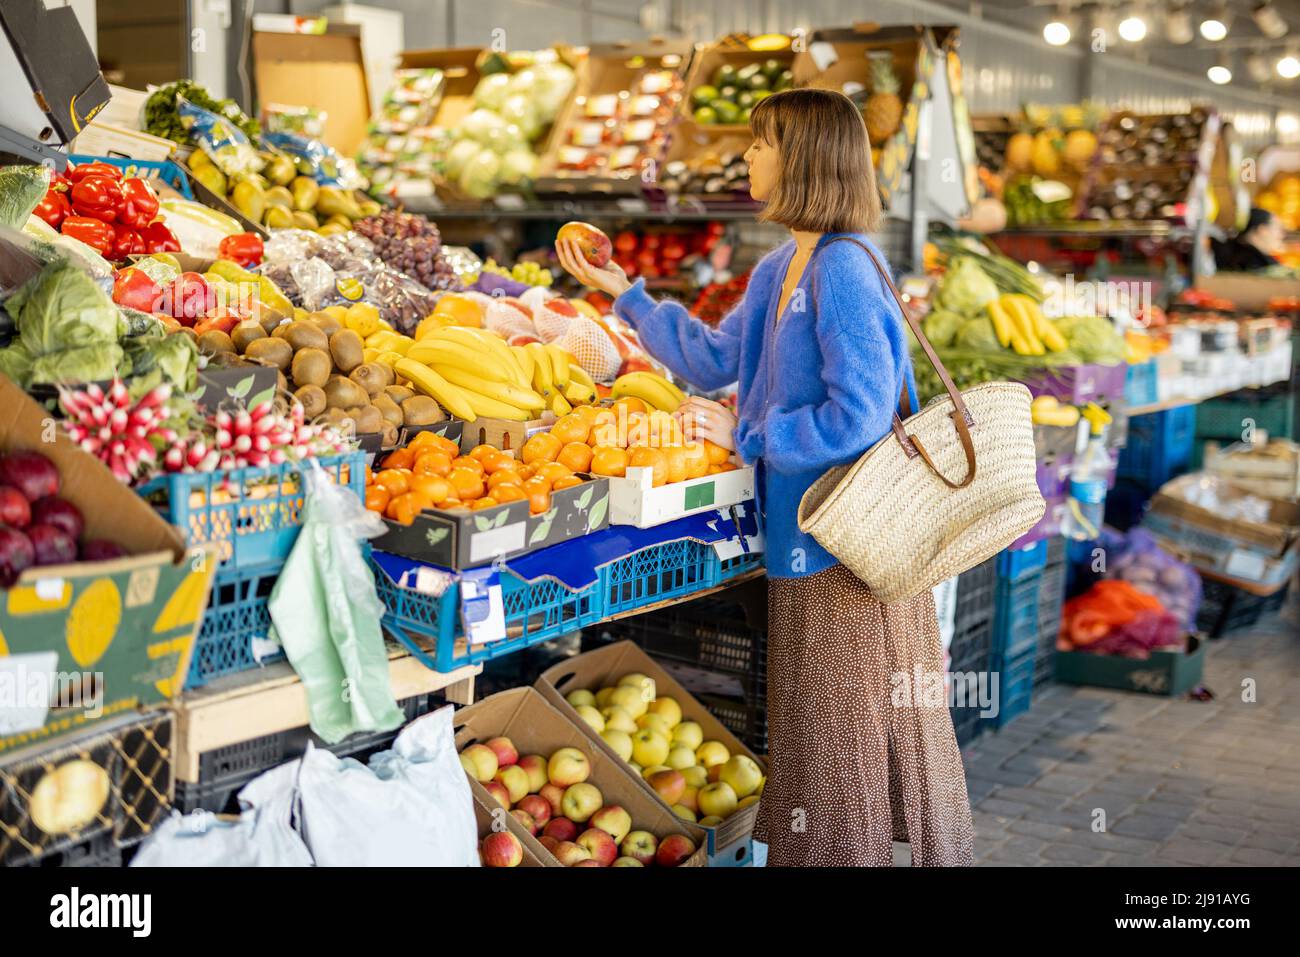 Woman shopping food at market Stock Photo